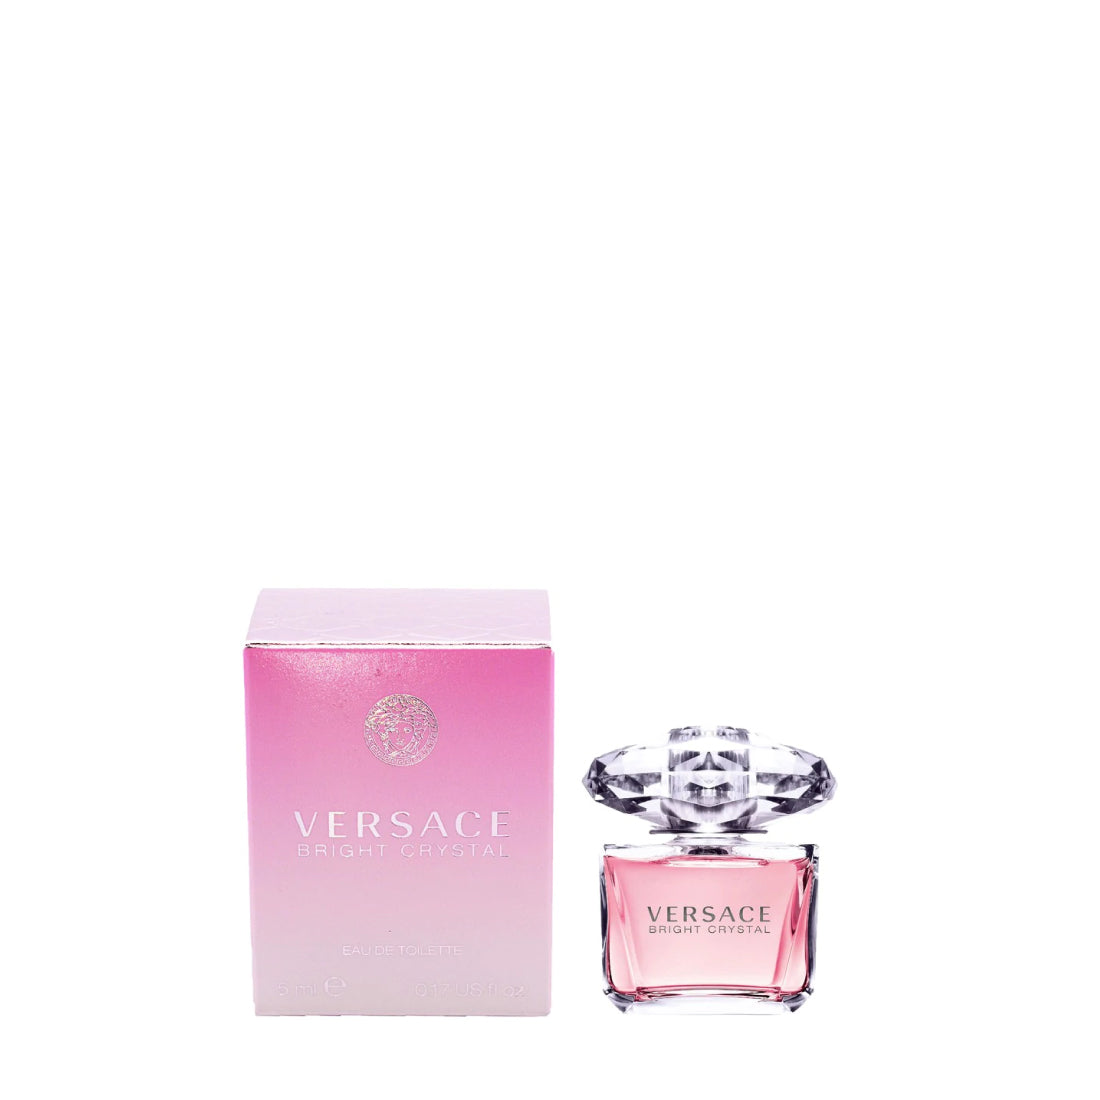 – Bright Women | Now Toilette Eau De Crystal Versace Plus Outlet Buy Perfume for